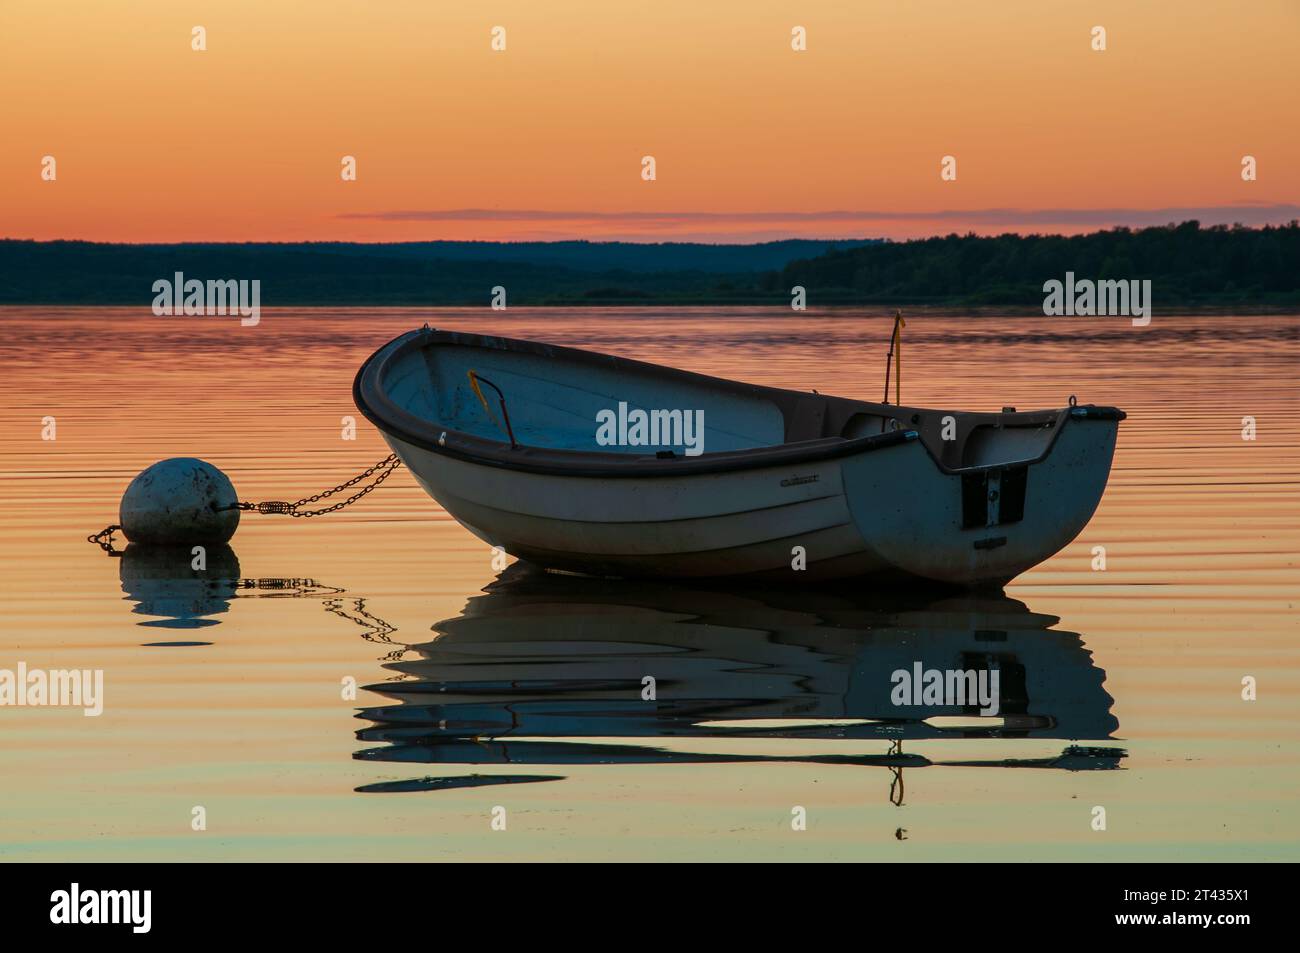 Intensiver und schöner Sonnenuntergang über dem See Finjasjön außerhalb von Hässleholm, Schweden, mit einem Boot und seinen Reflexen im Wasser. Stockfoto